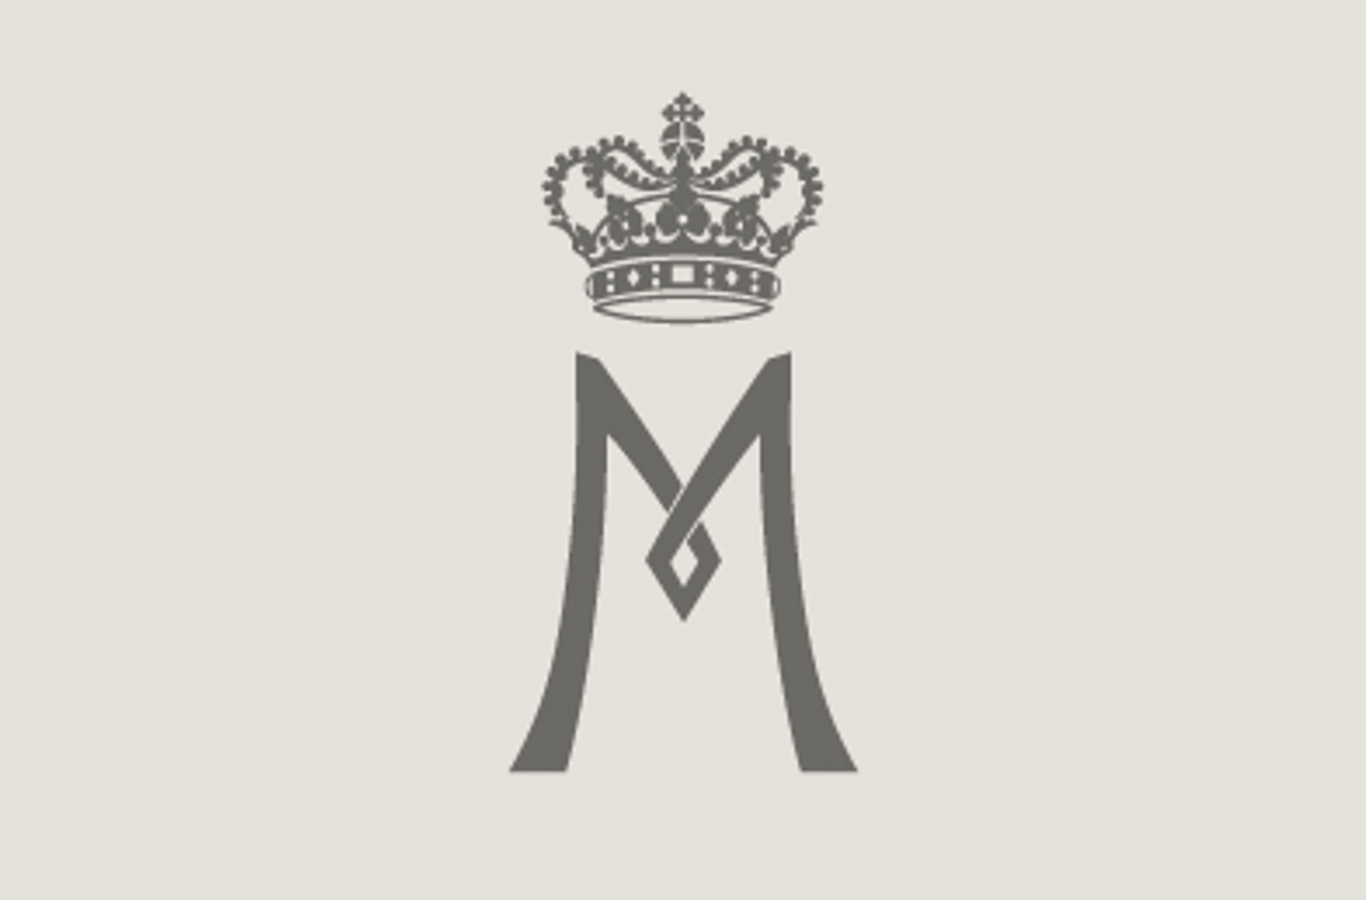 Hendes Kongelige Højhed Kronprinsessens monogram